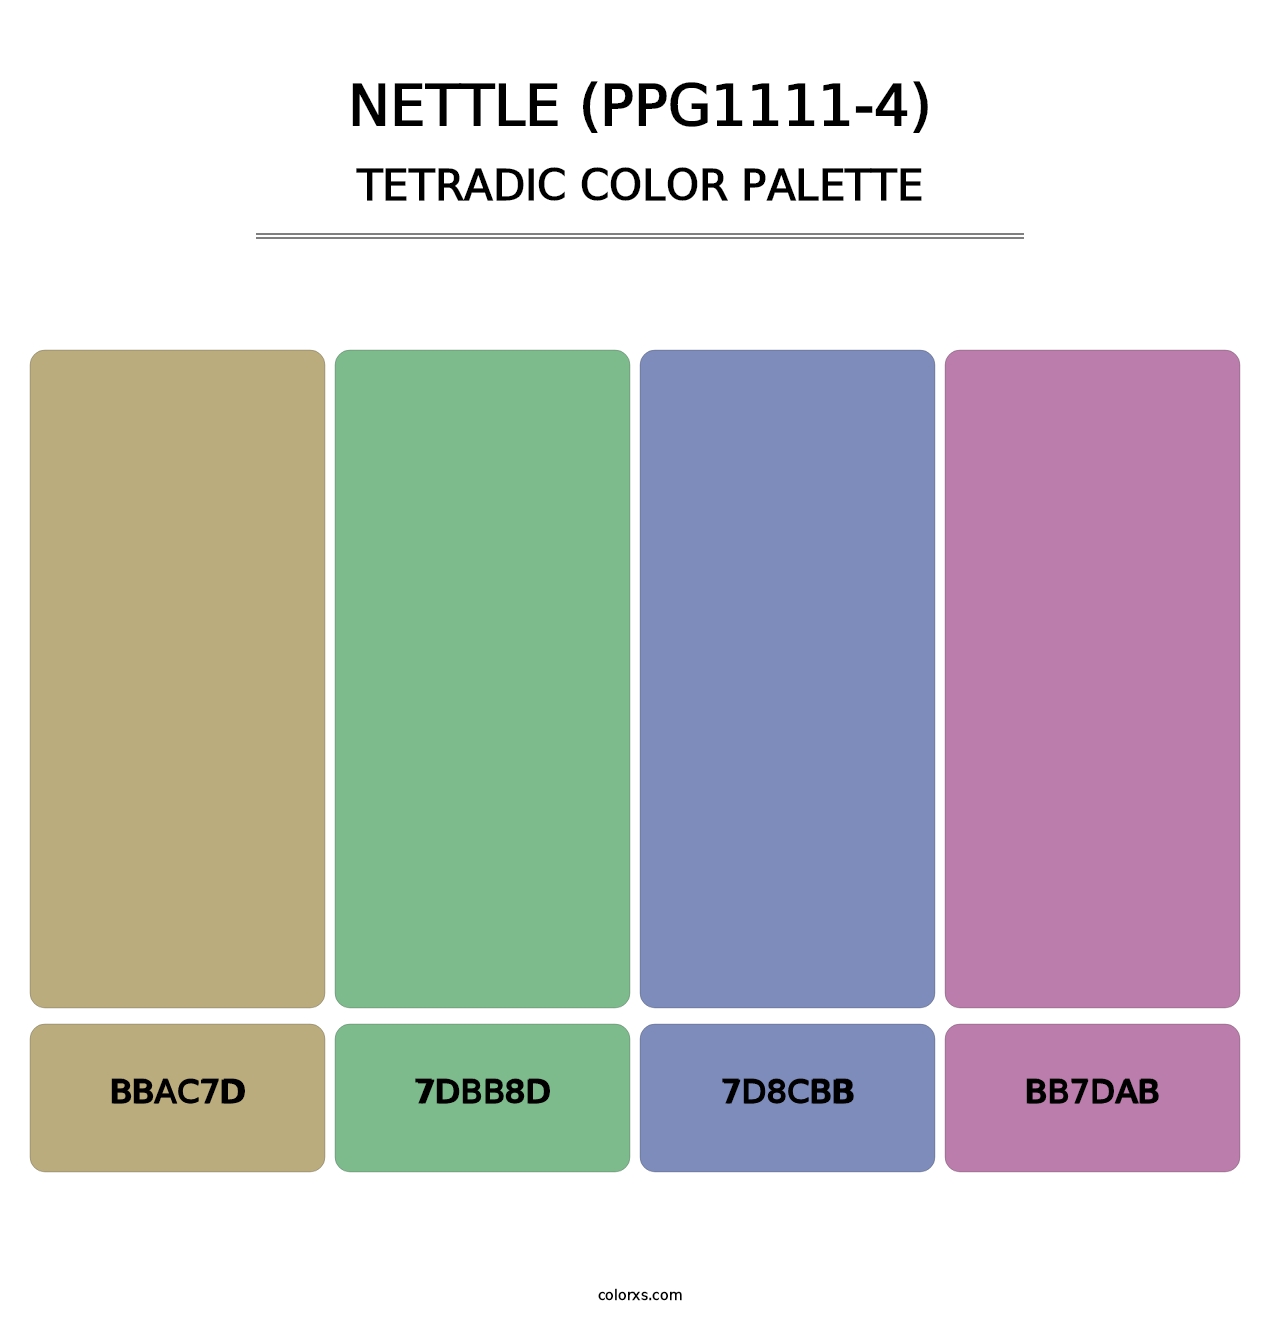 Nettle (PPG1111-4) - Tetradic Color Palette